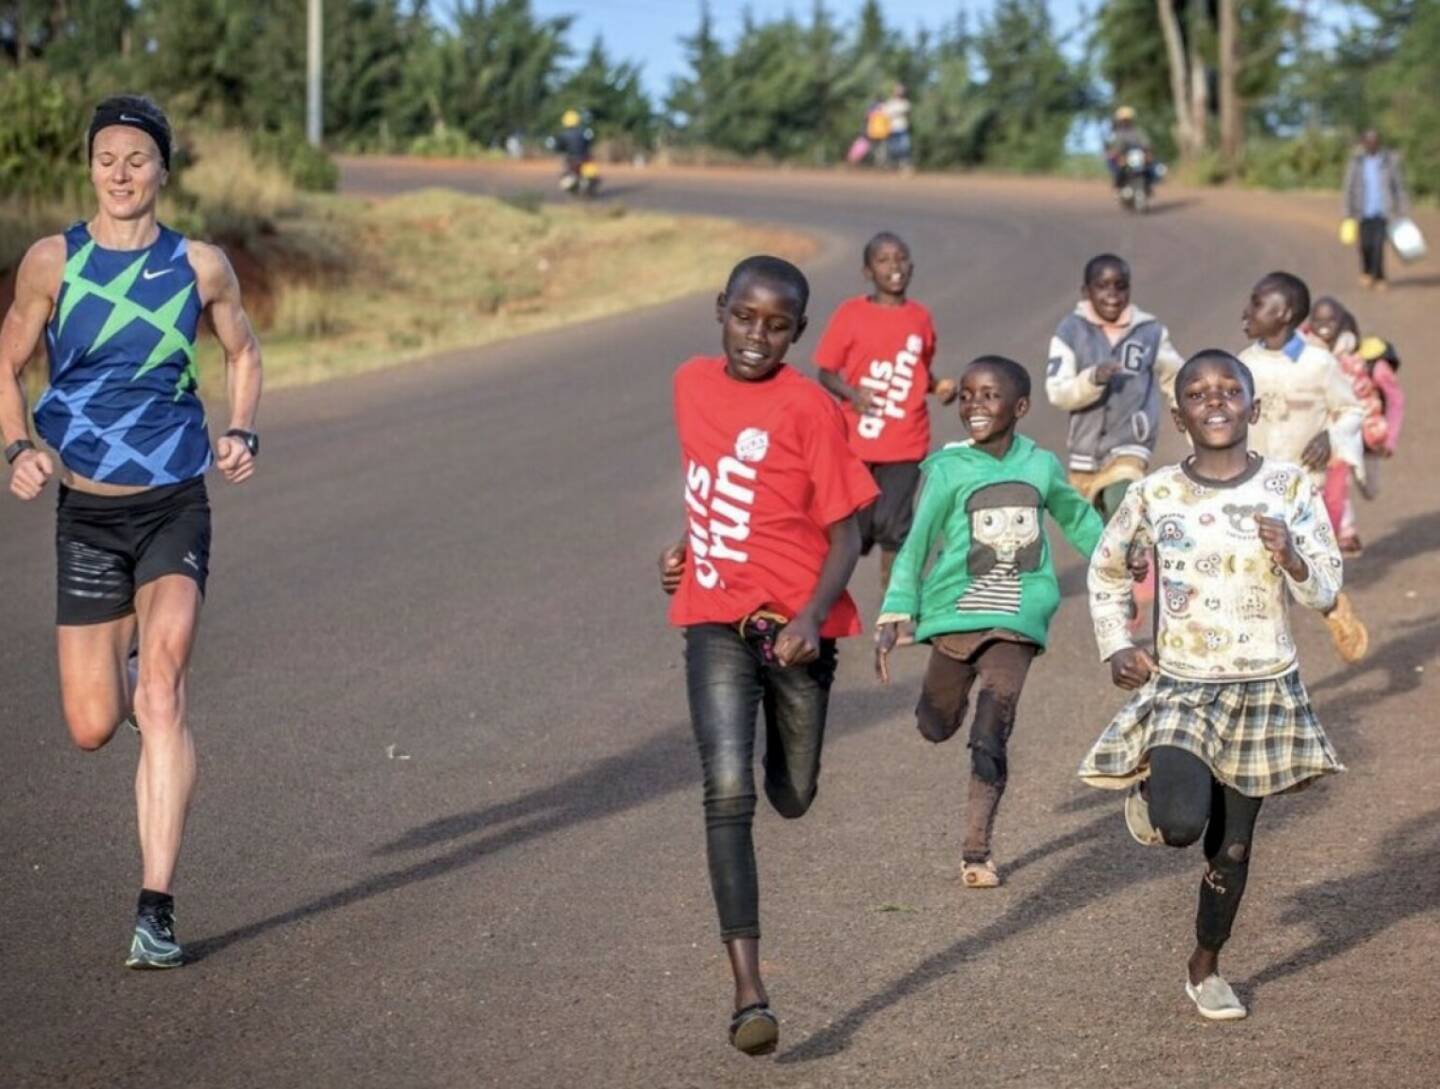 Tanja Stroschneider Run Kenia Afrika Yes (c) Wilhelm Lilge
Von: https://www.instagram.com/tstroschneidertri// (Tanja Stroschneider. Triathletin https://youtu.be/8mBNx4YvAeI  http://www.sportgeschichte.at) 